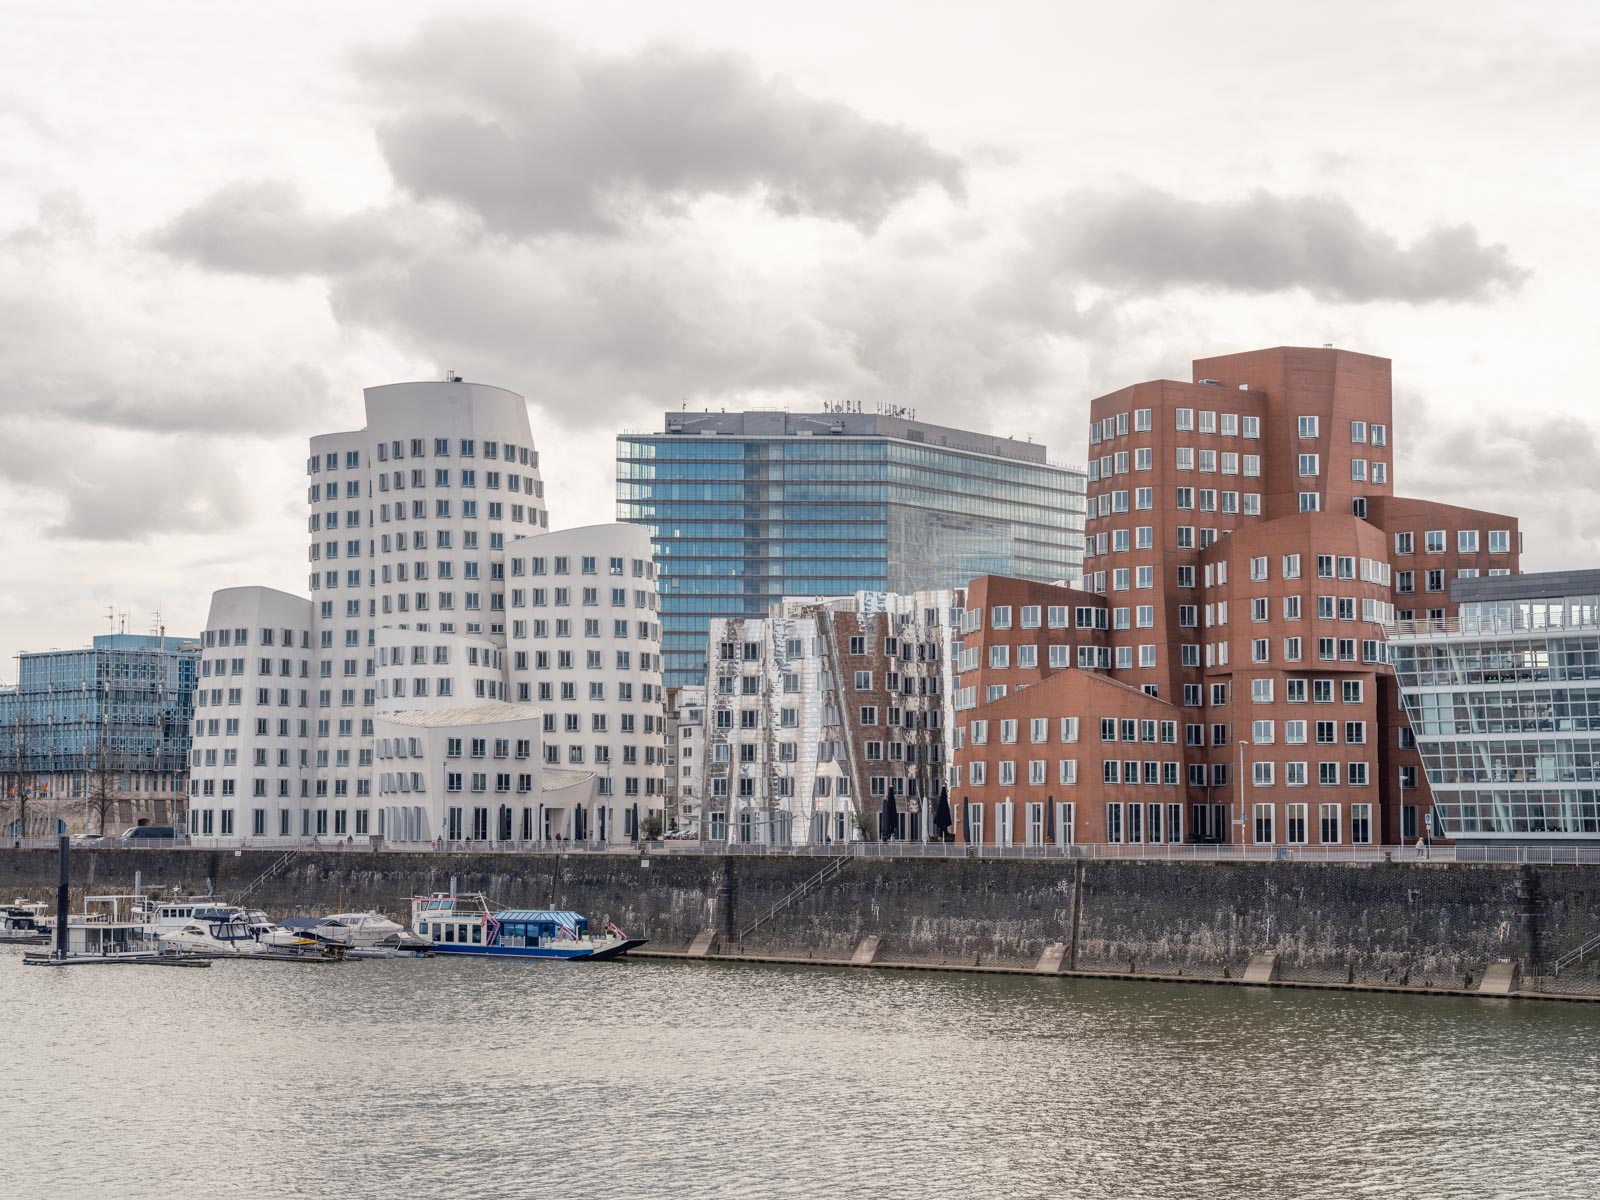 Building complex 'Neuer Zollhof' by Frank O. Gehry (Düsseldorf, Germany).